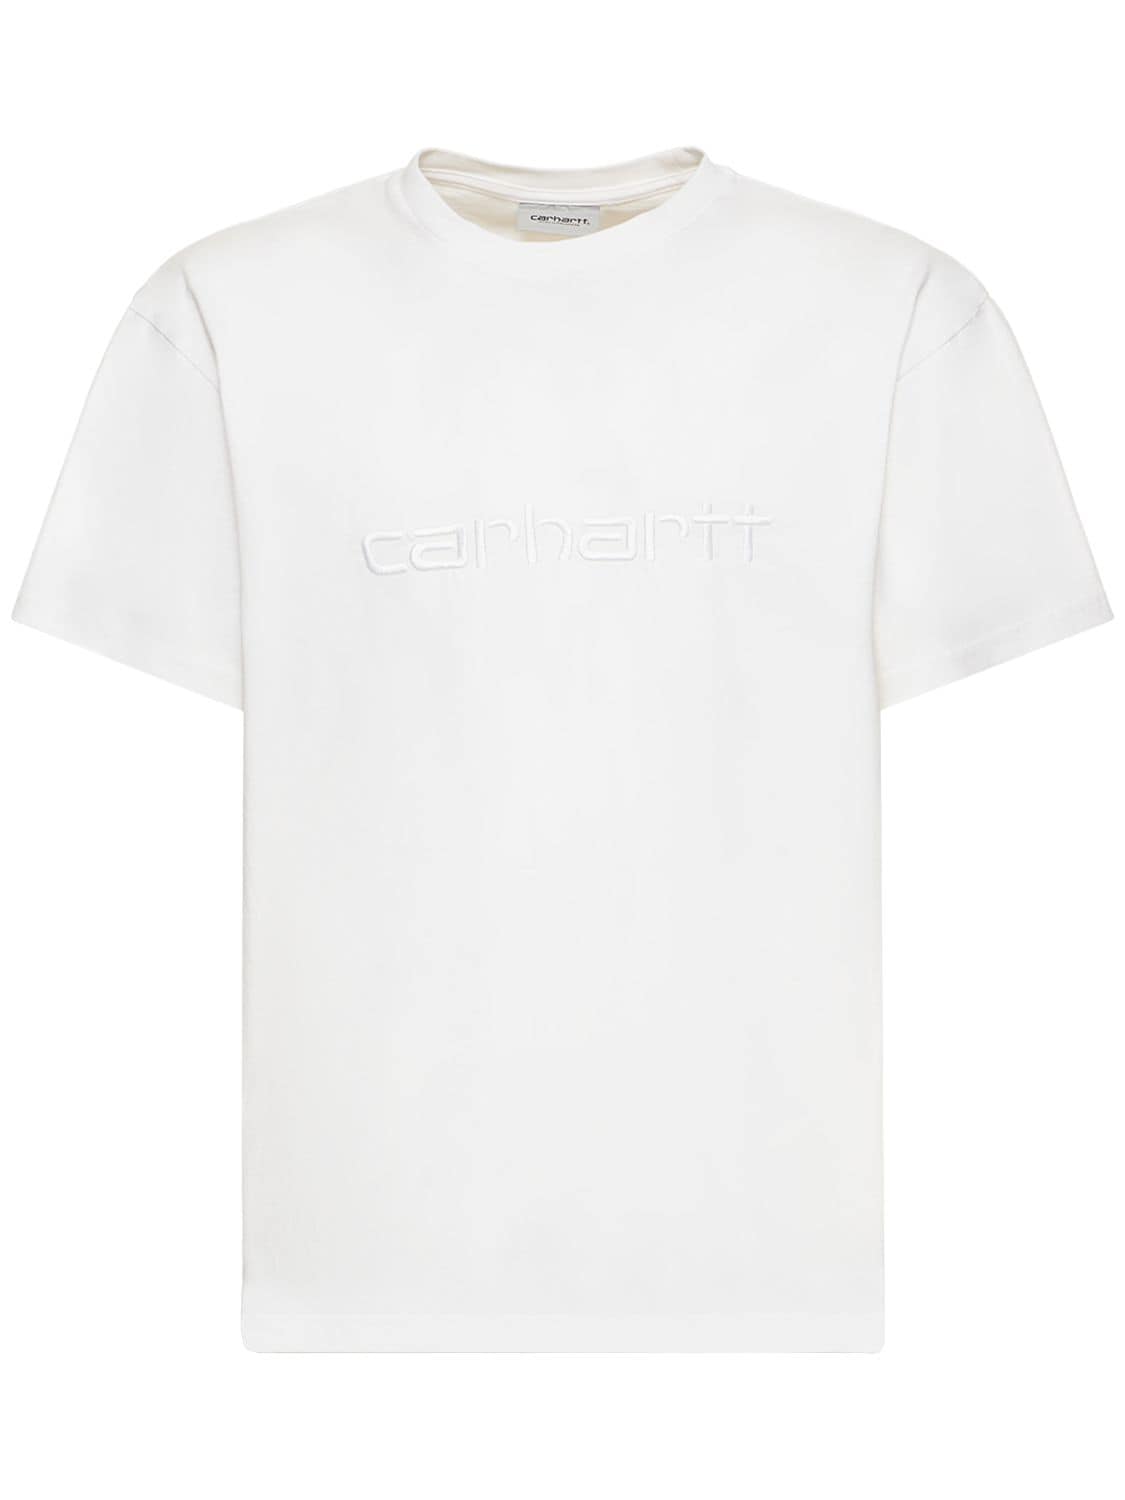 Duster Cotton Jersey T-shirt - CARHARTT WIP - Modalova